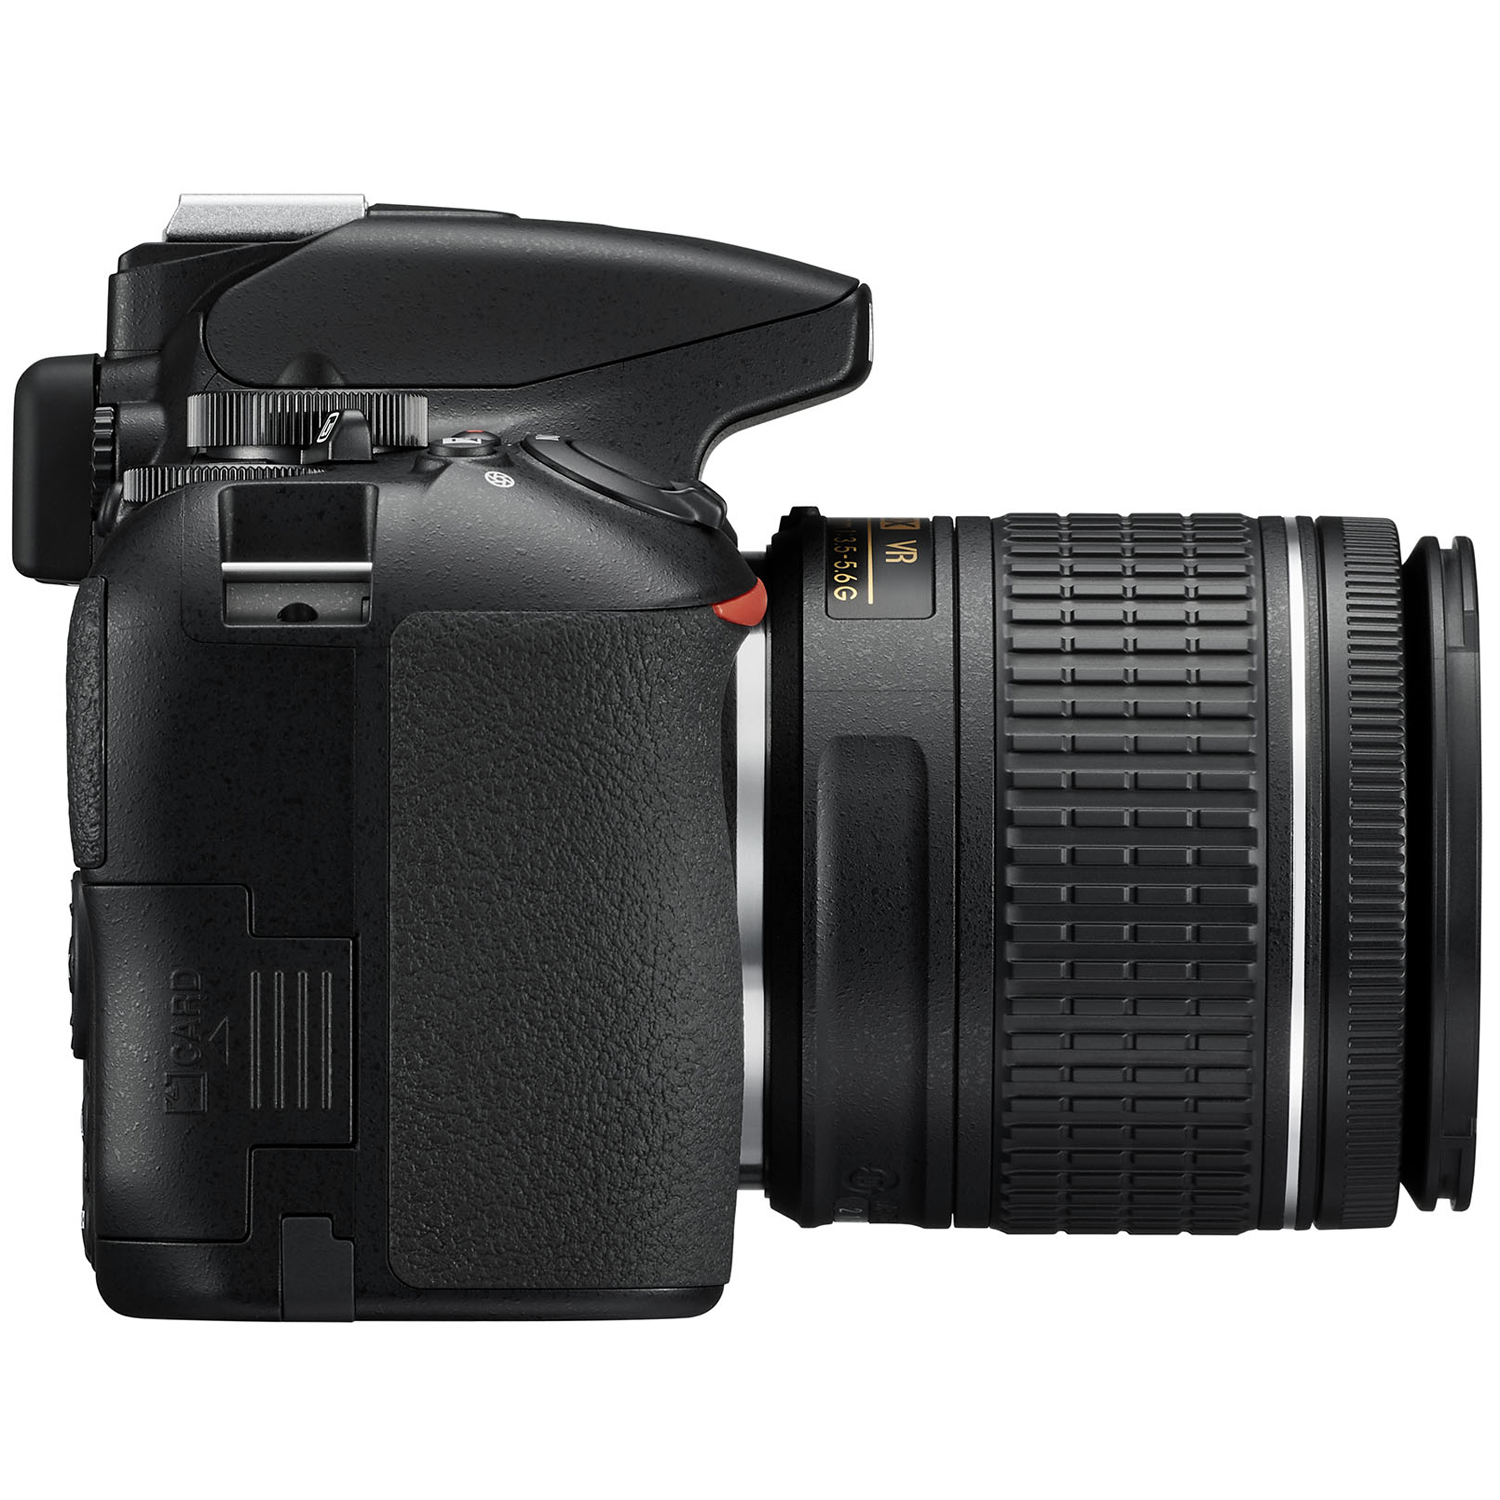 Nikon D3500 W/ AF-P DX Nikkor 18-55mm f/3.5-5.6G VR Black - image 4 of 10